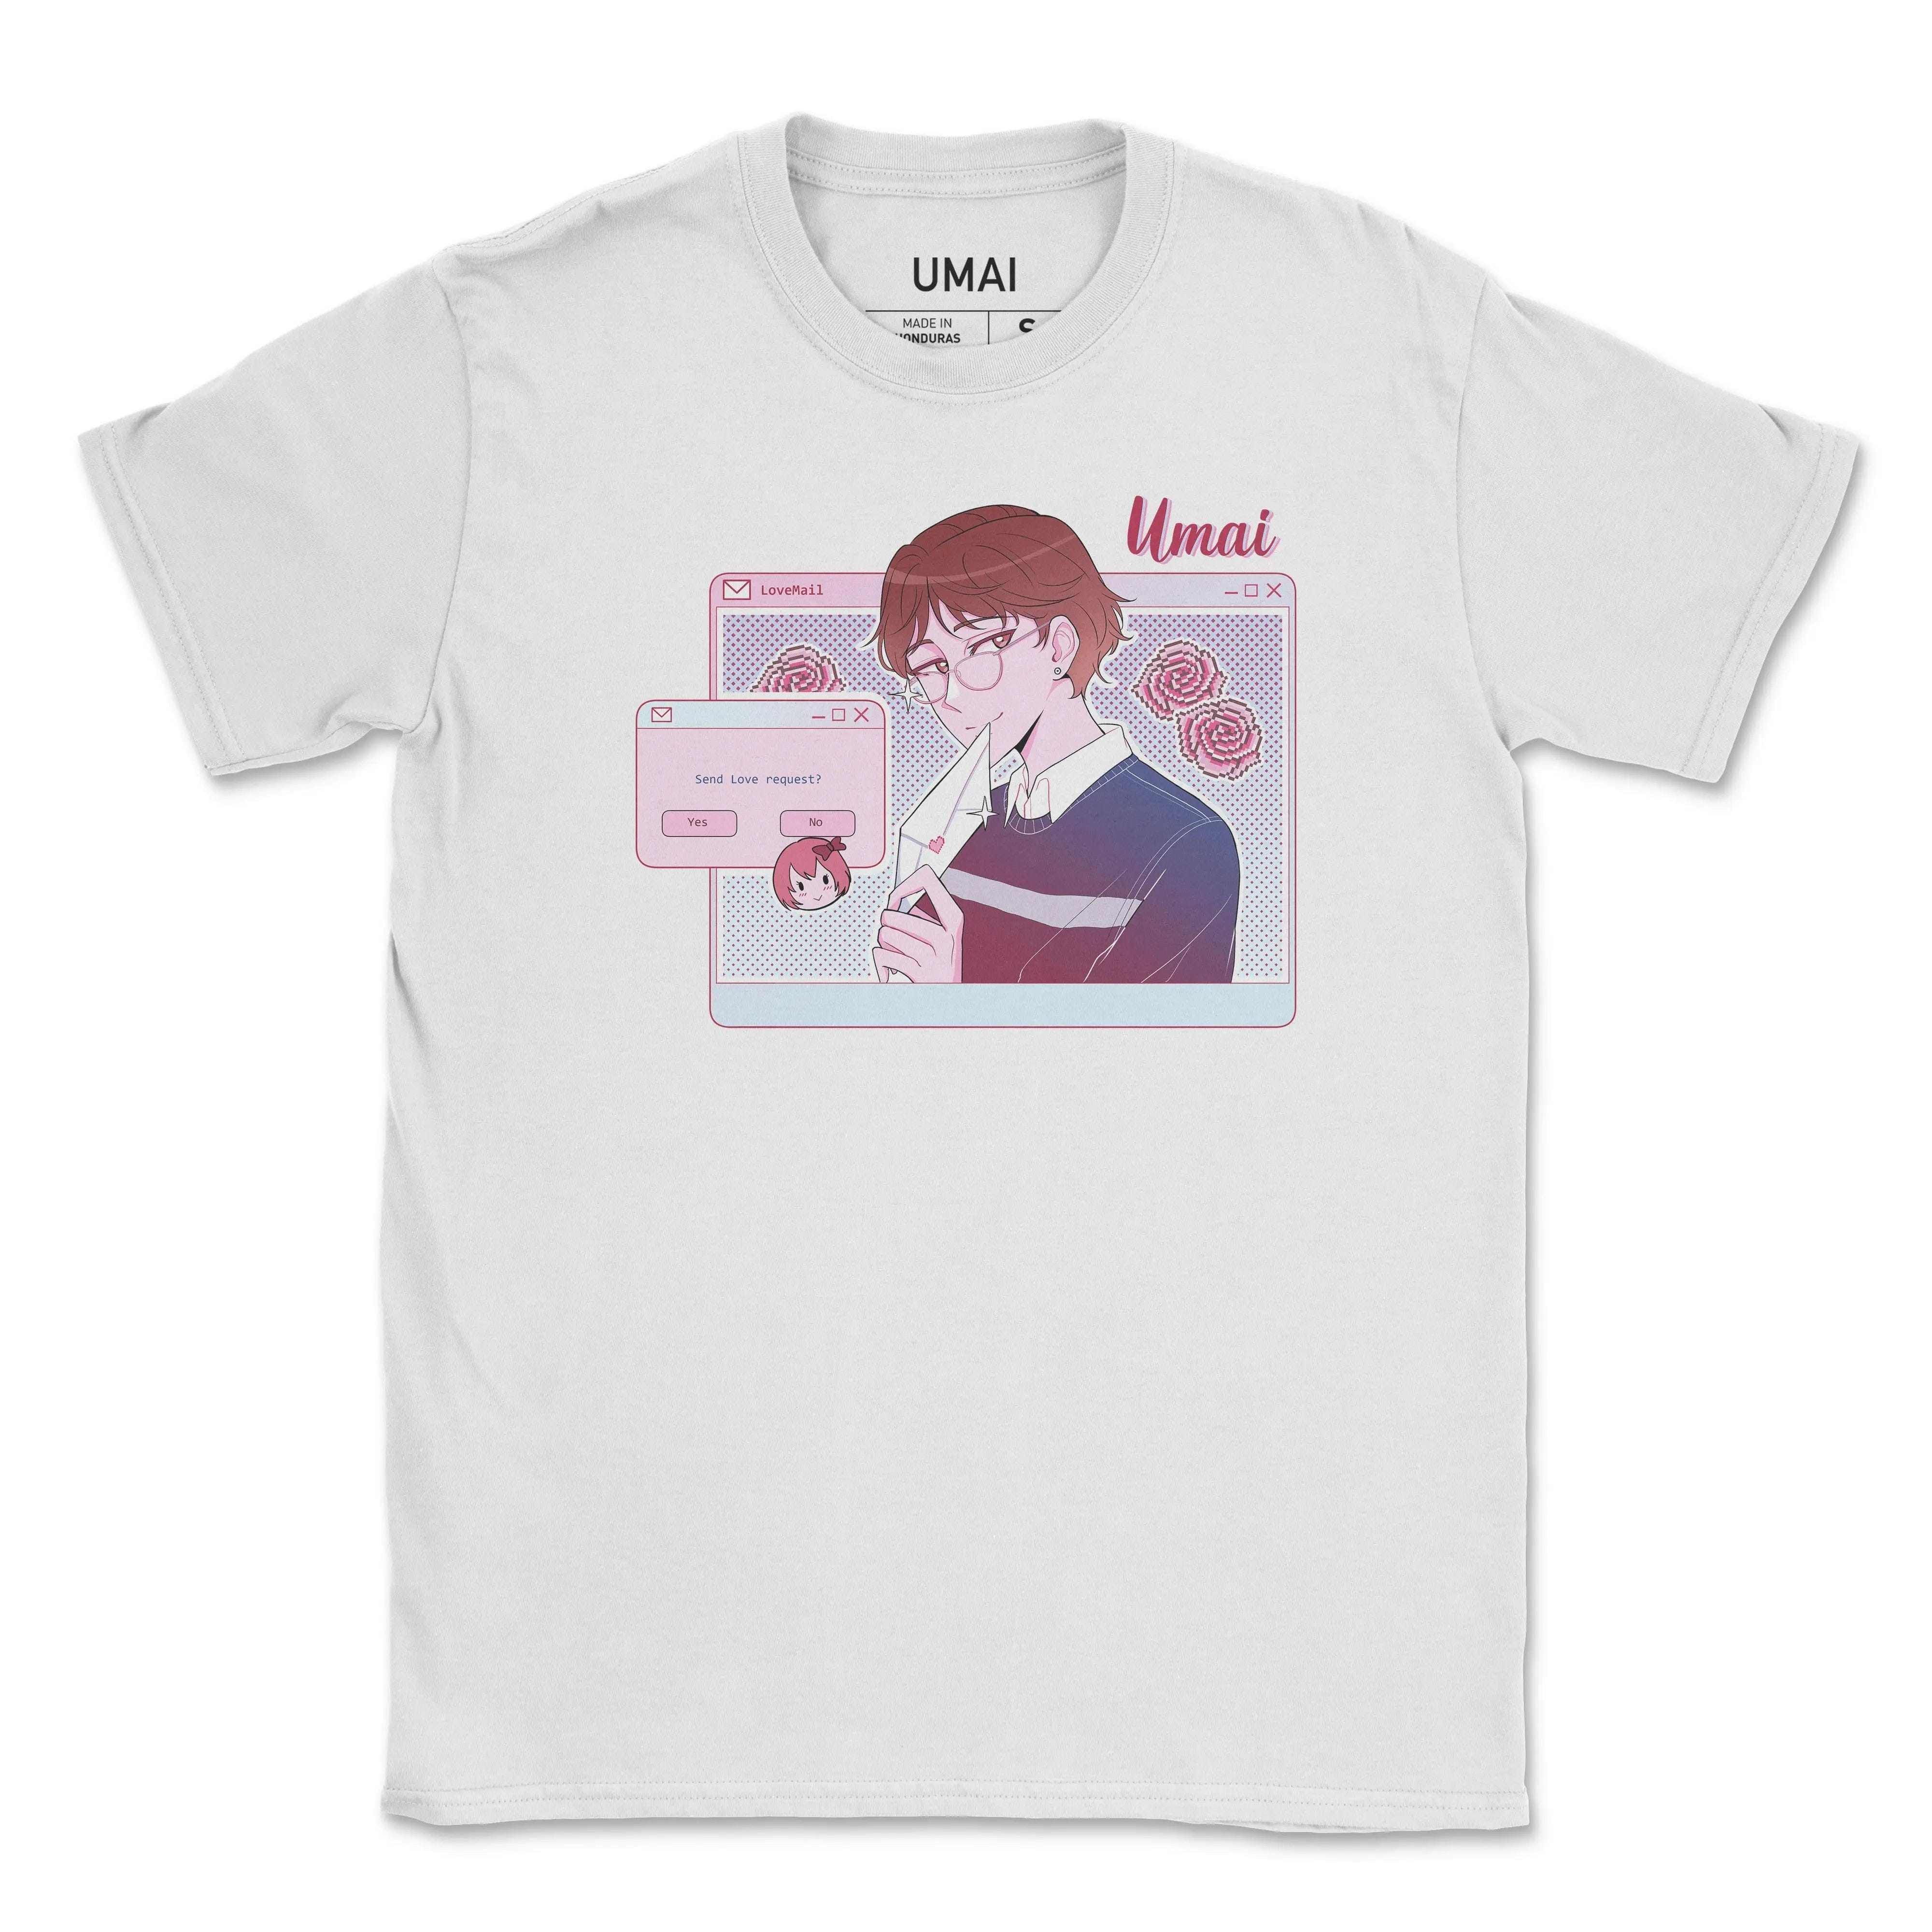 Exclusivo de febrero de 2021 (Niño) • Camiseta